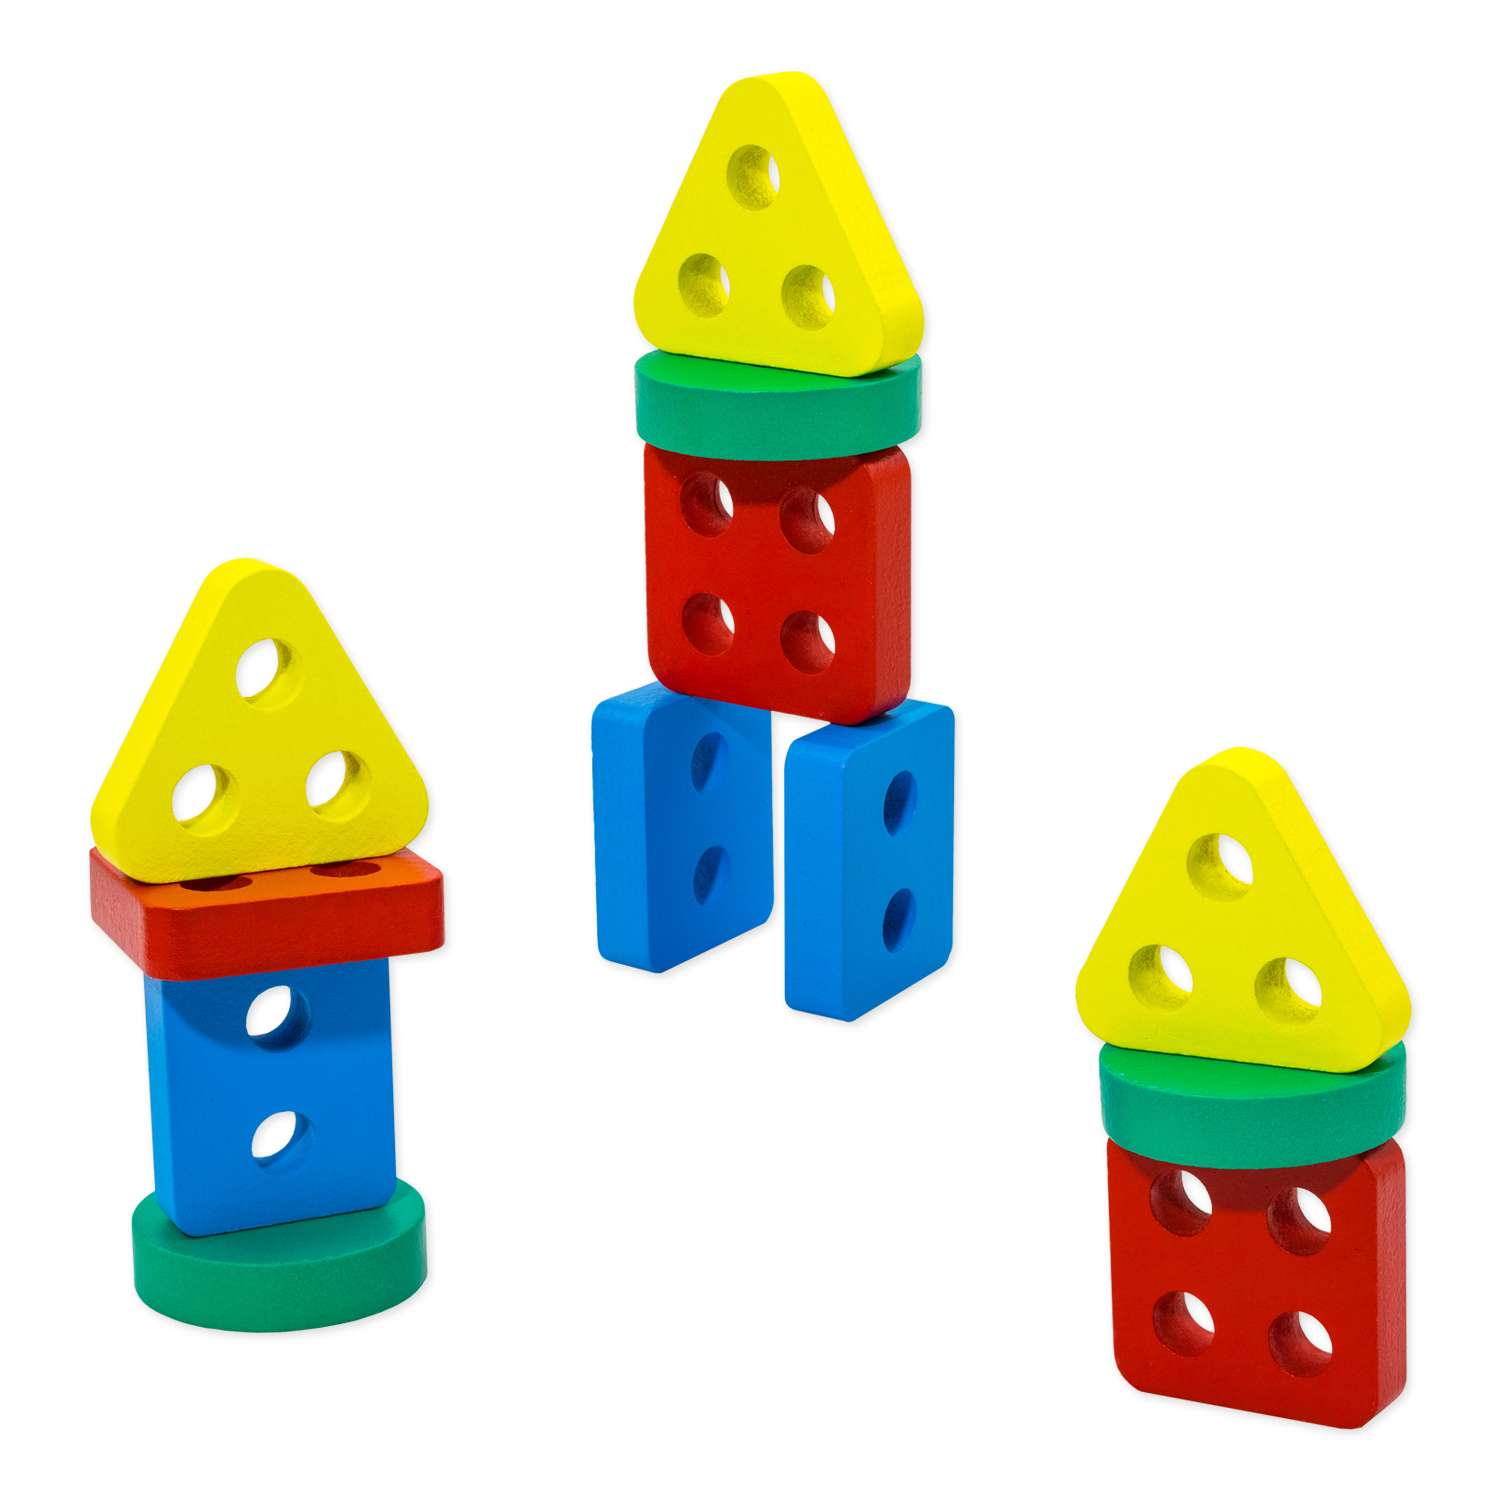 Сортер фигуры геометрические Alatoys 12 фигур развивающая деревянная игрушка + гайд - фото 15